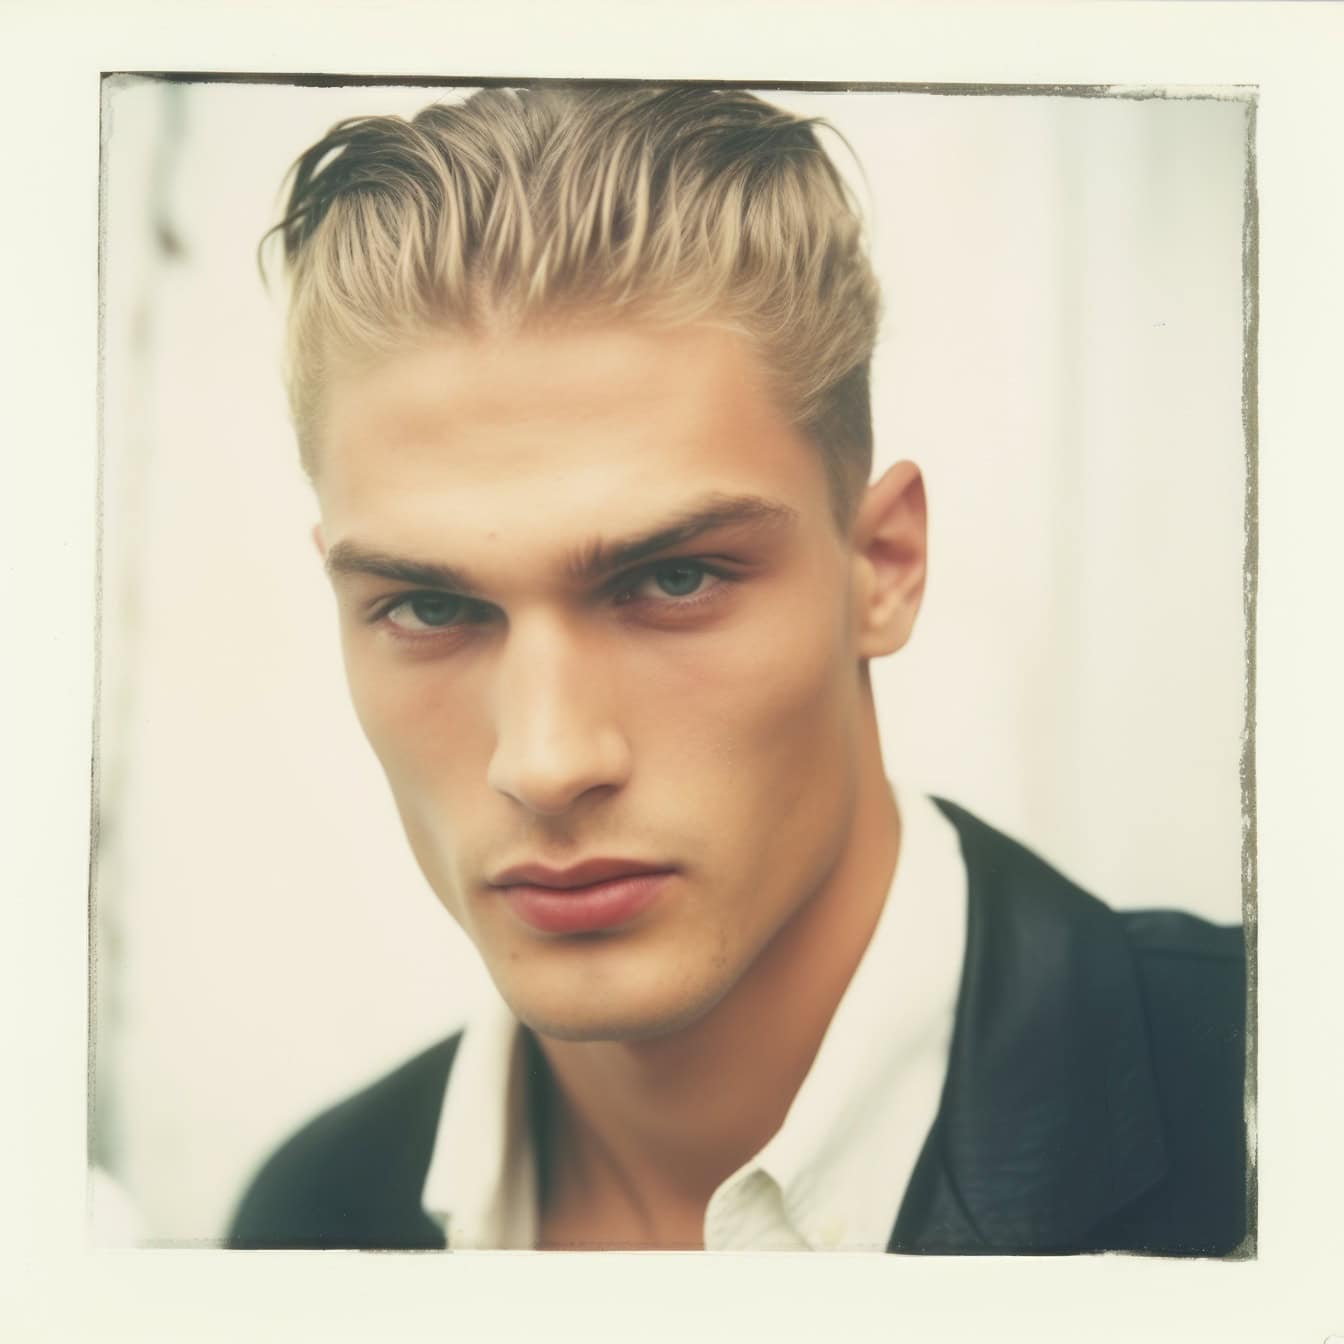 Foto polaroid pudar tua dari model foto pria yang sangat tampan dengan rambut pirang